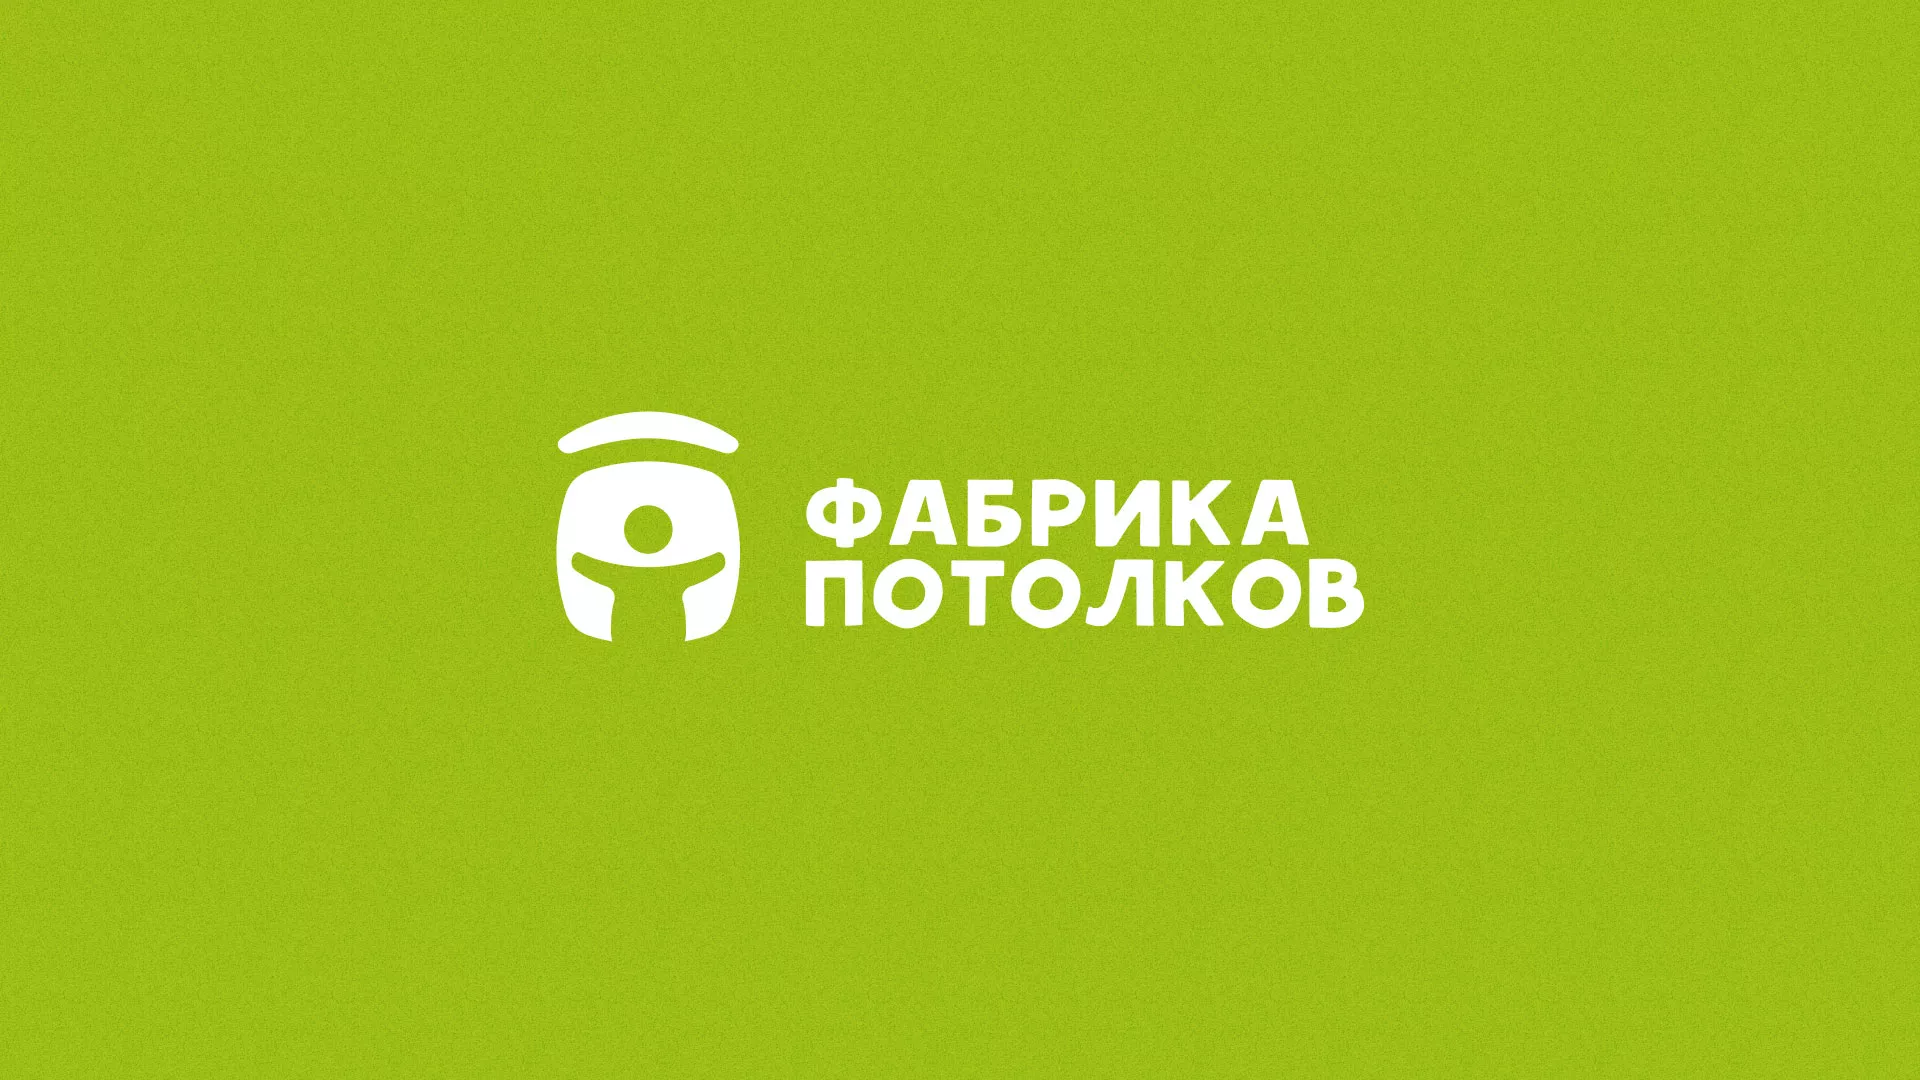 Разработка логотипа для производства натяжных потолков в Сергиевом Посаде